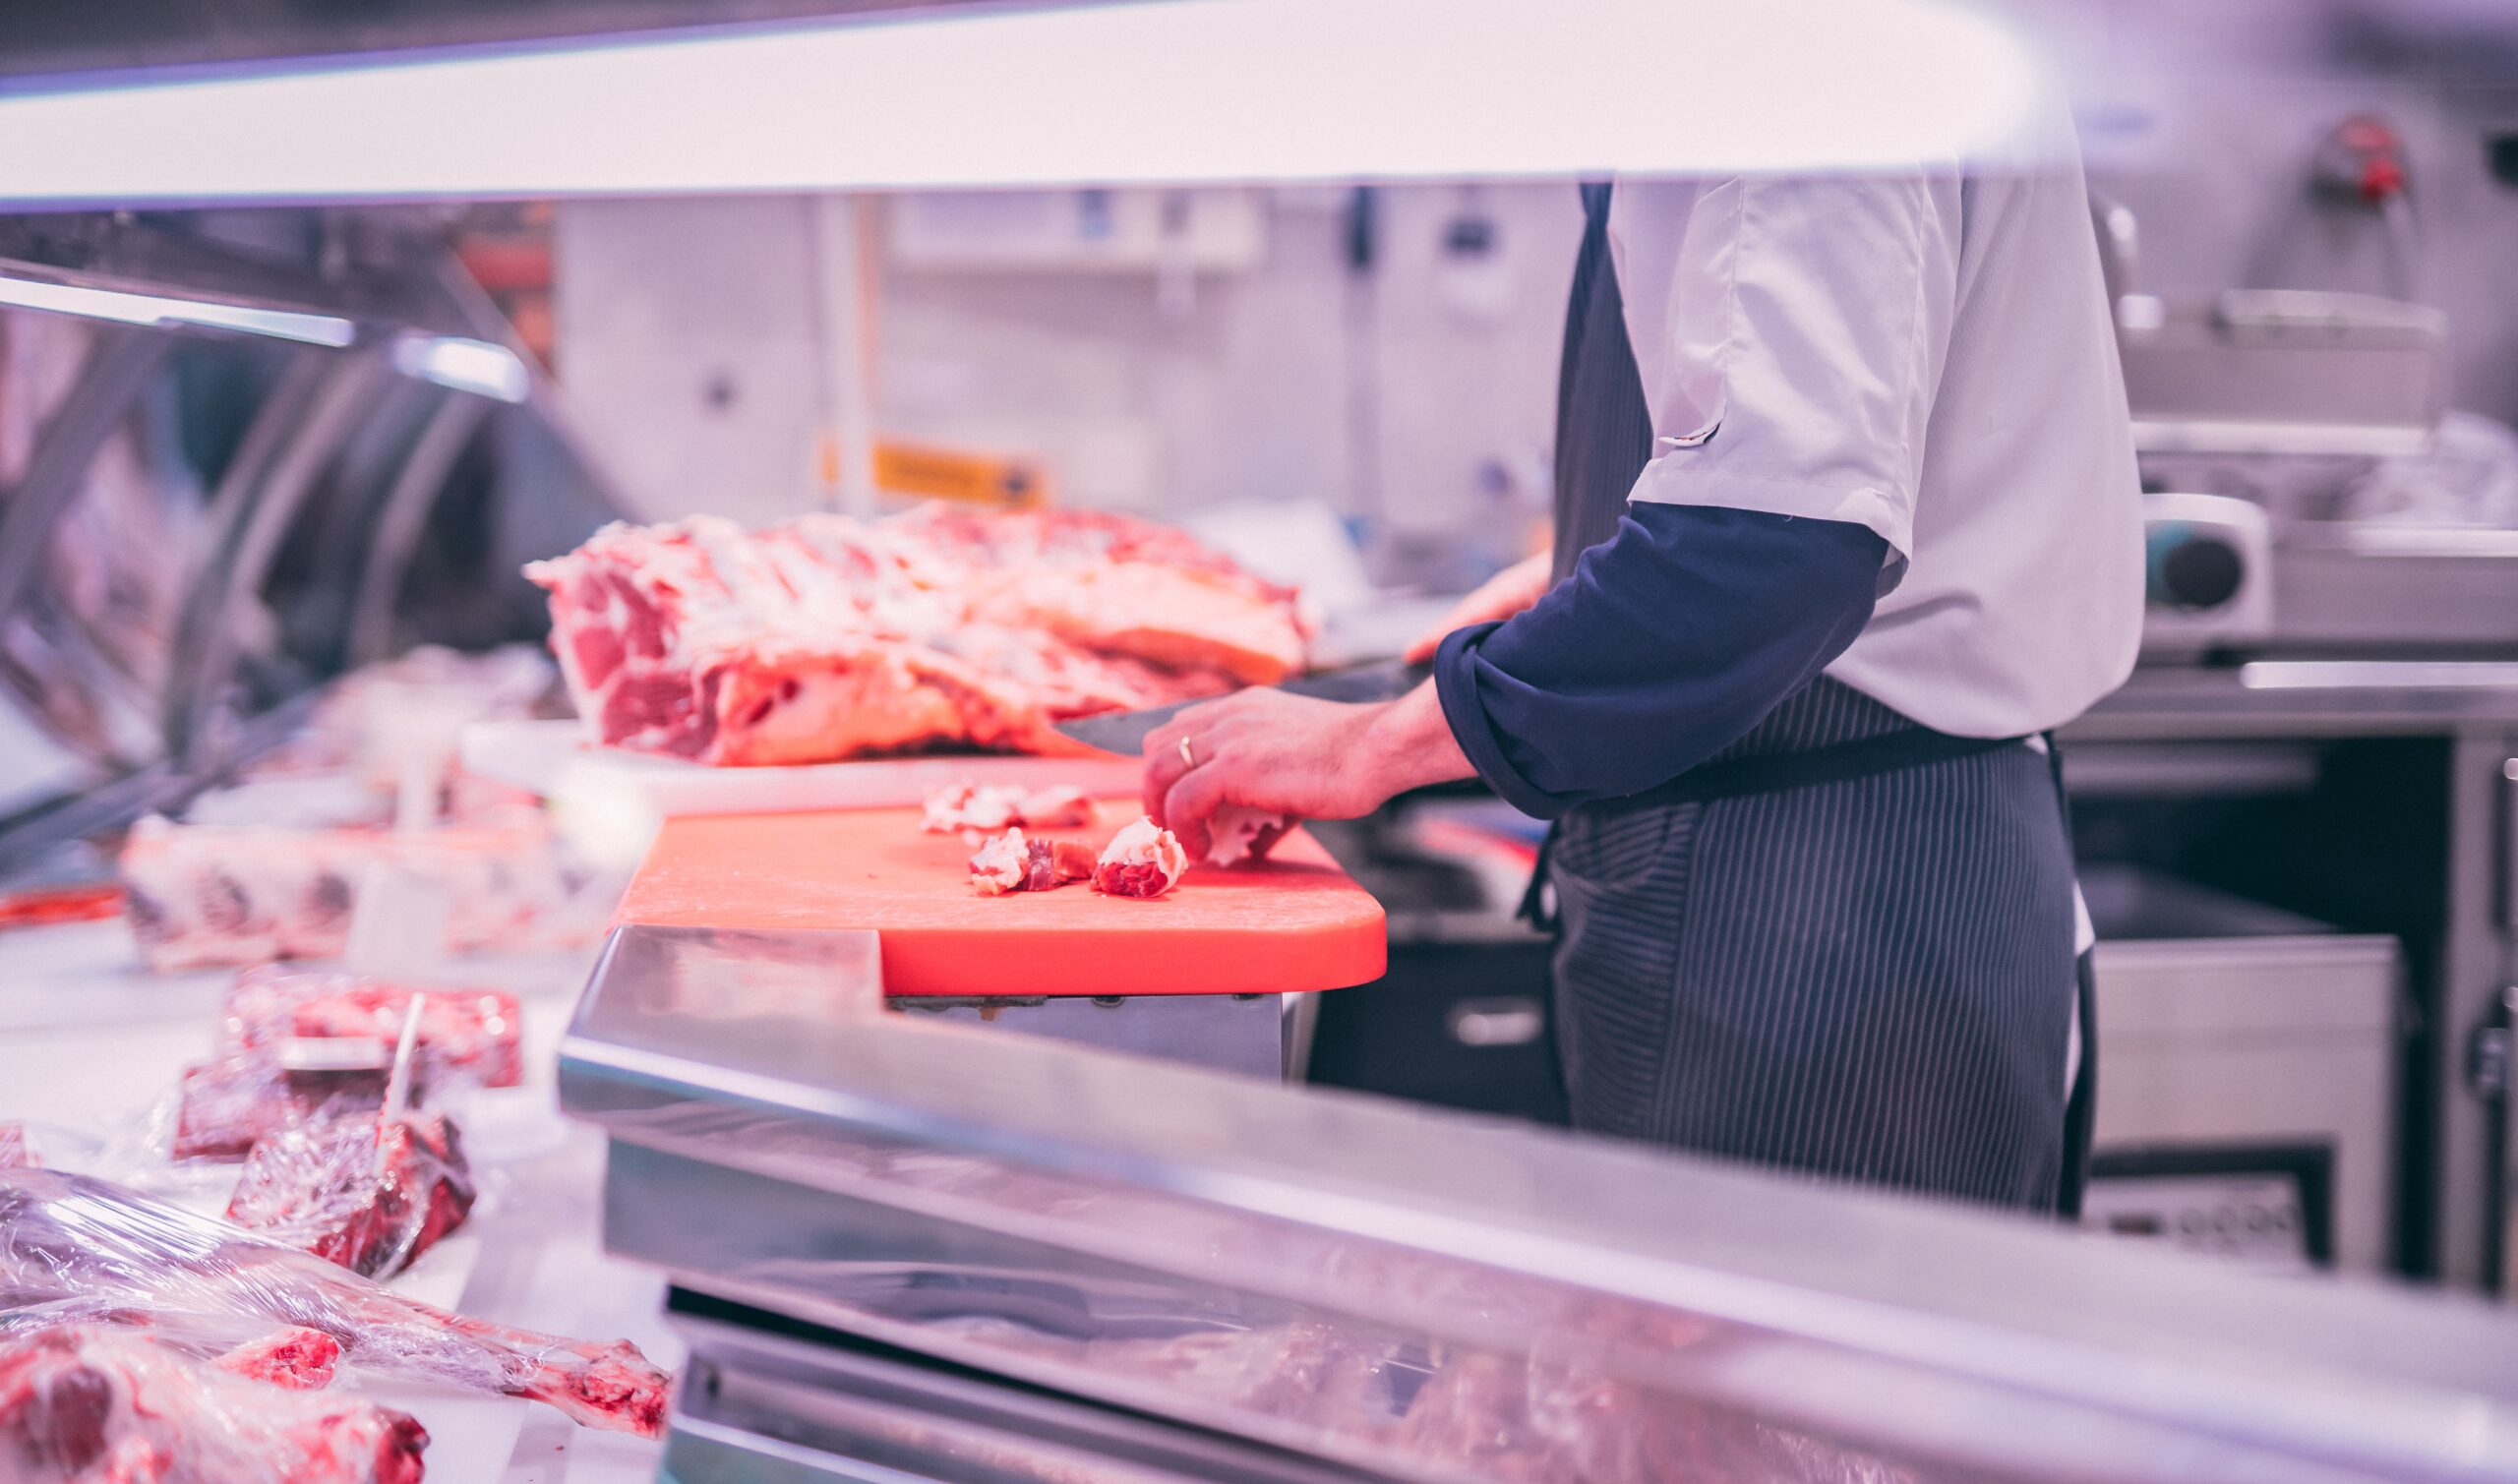 meat preparation behind butchers display.